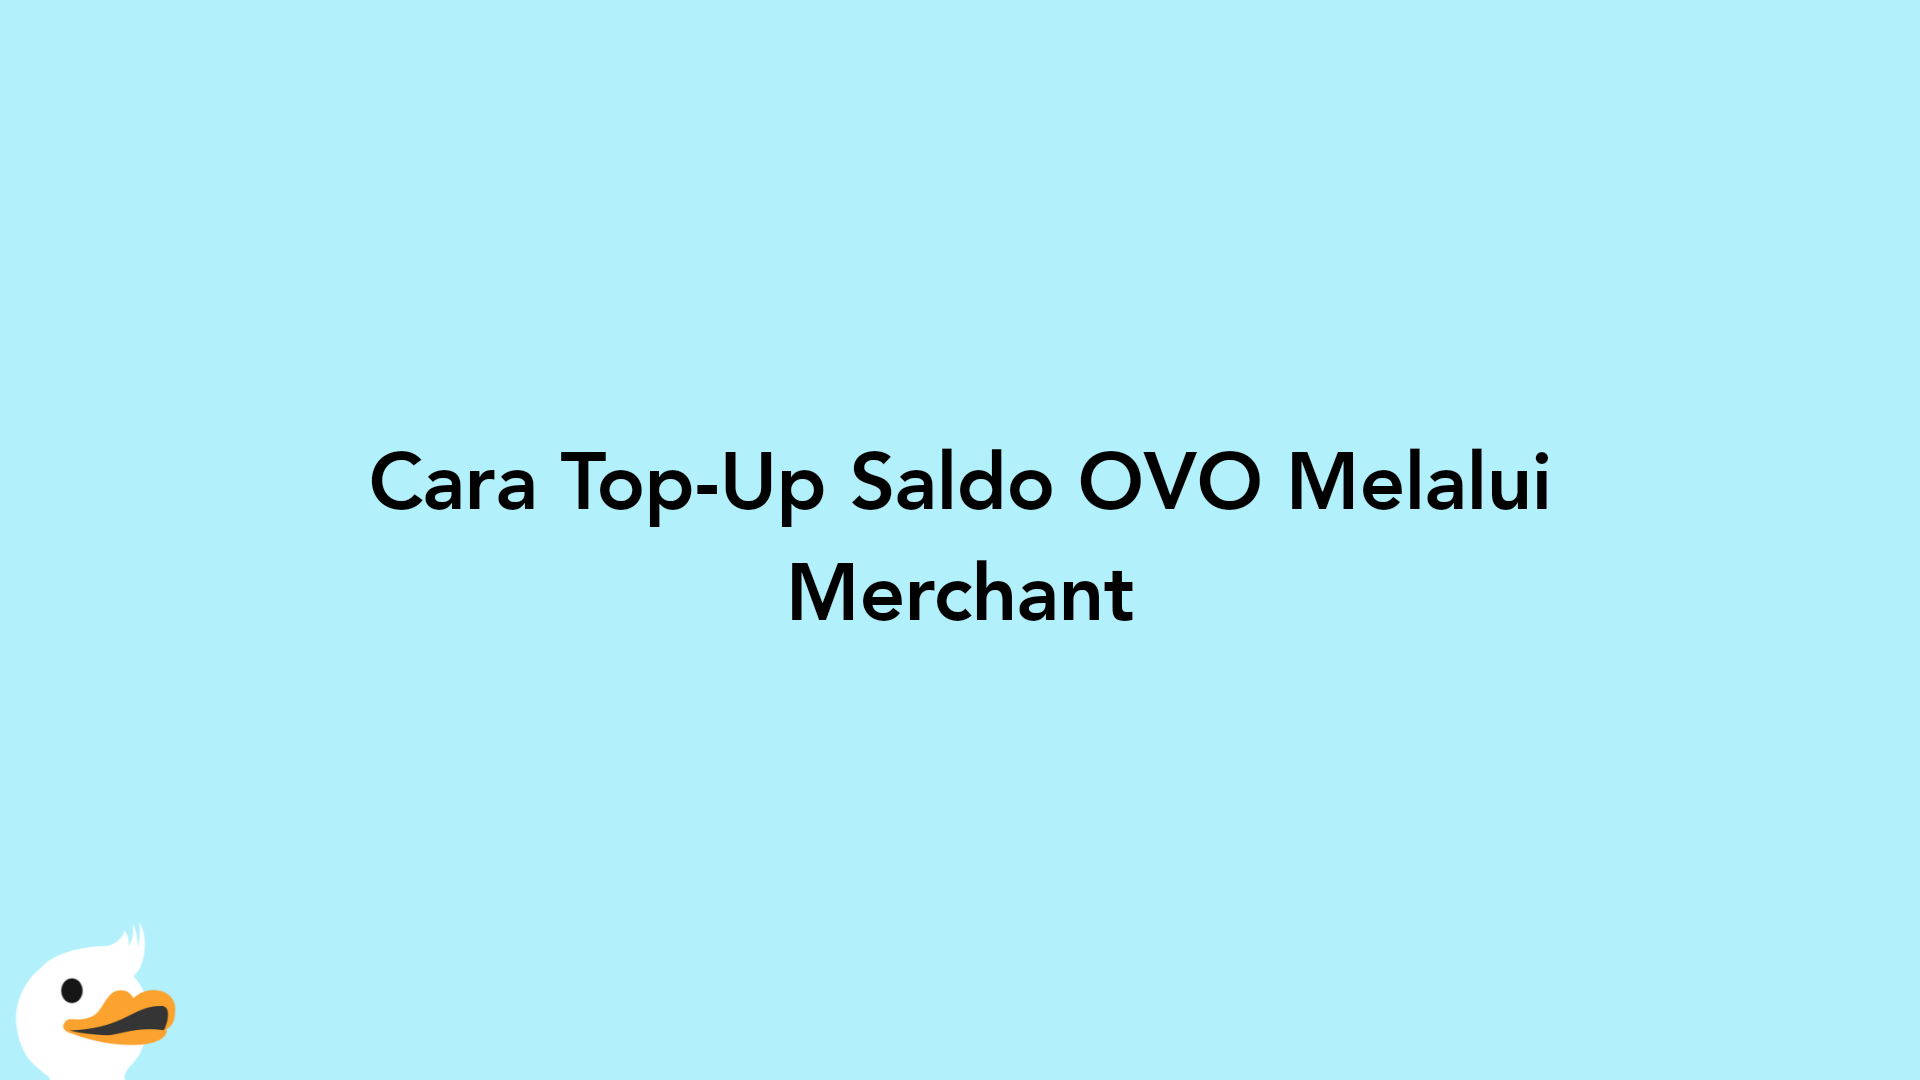 Cara Top-Up Saldo OVO Melalui Merchant